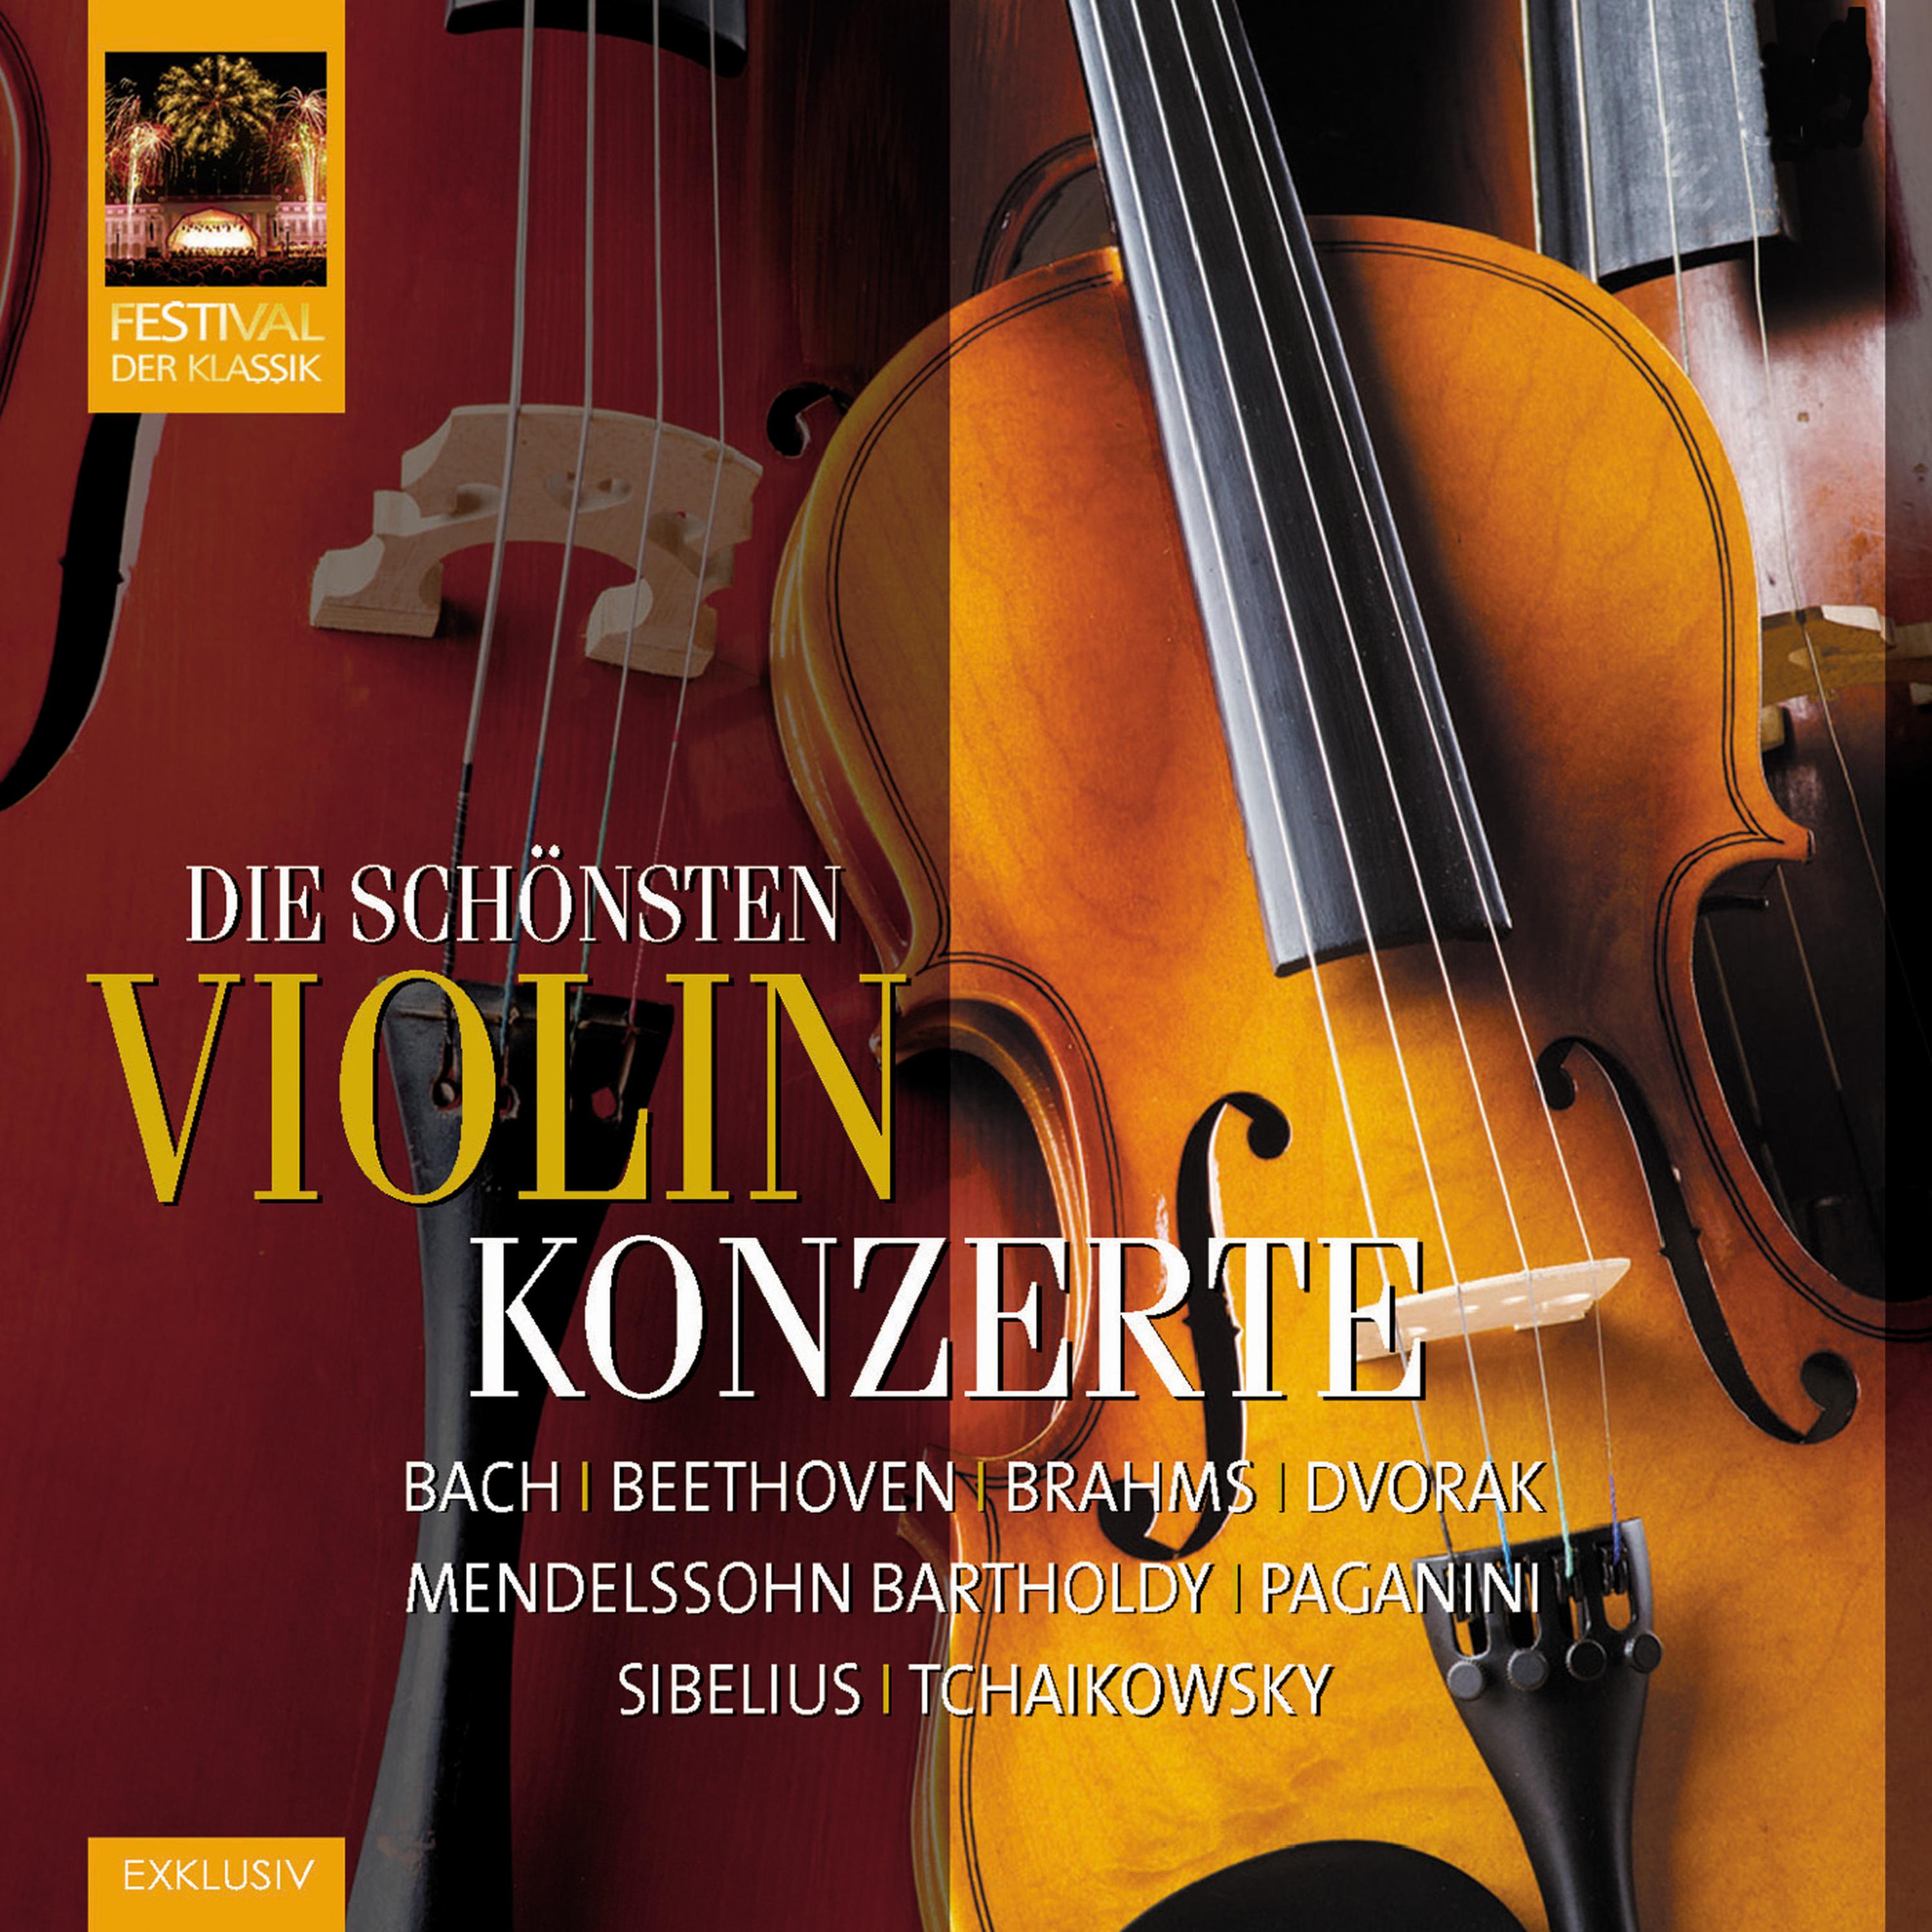 Violinkonzert in D Minor, BWV 1043: III. Allegro